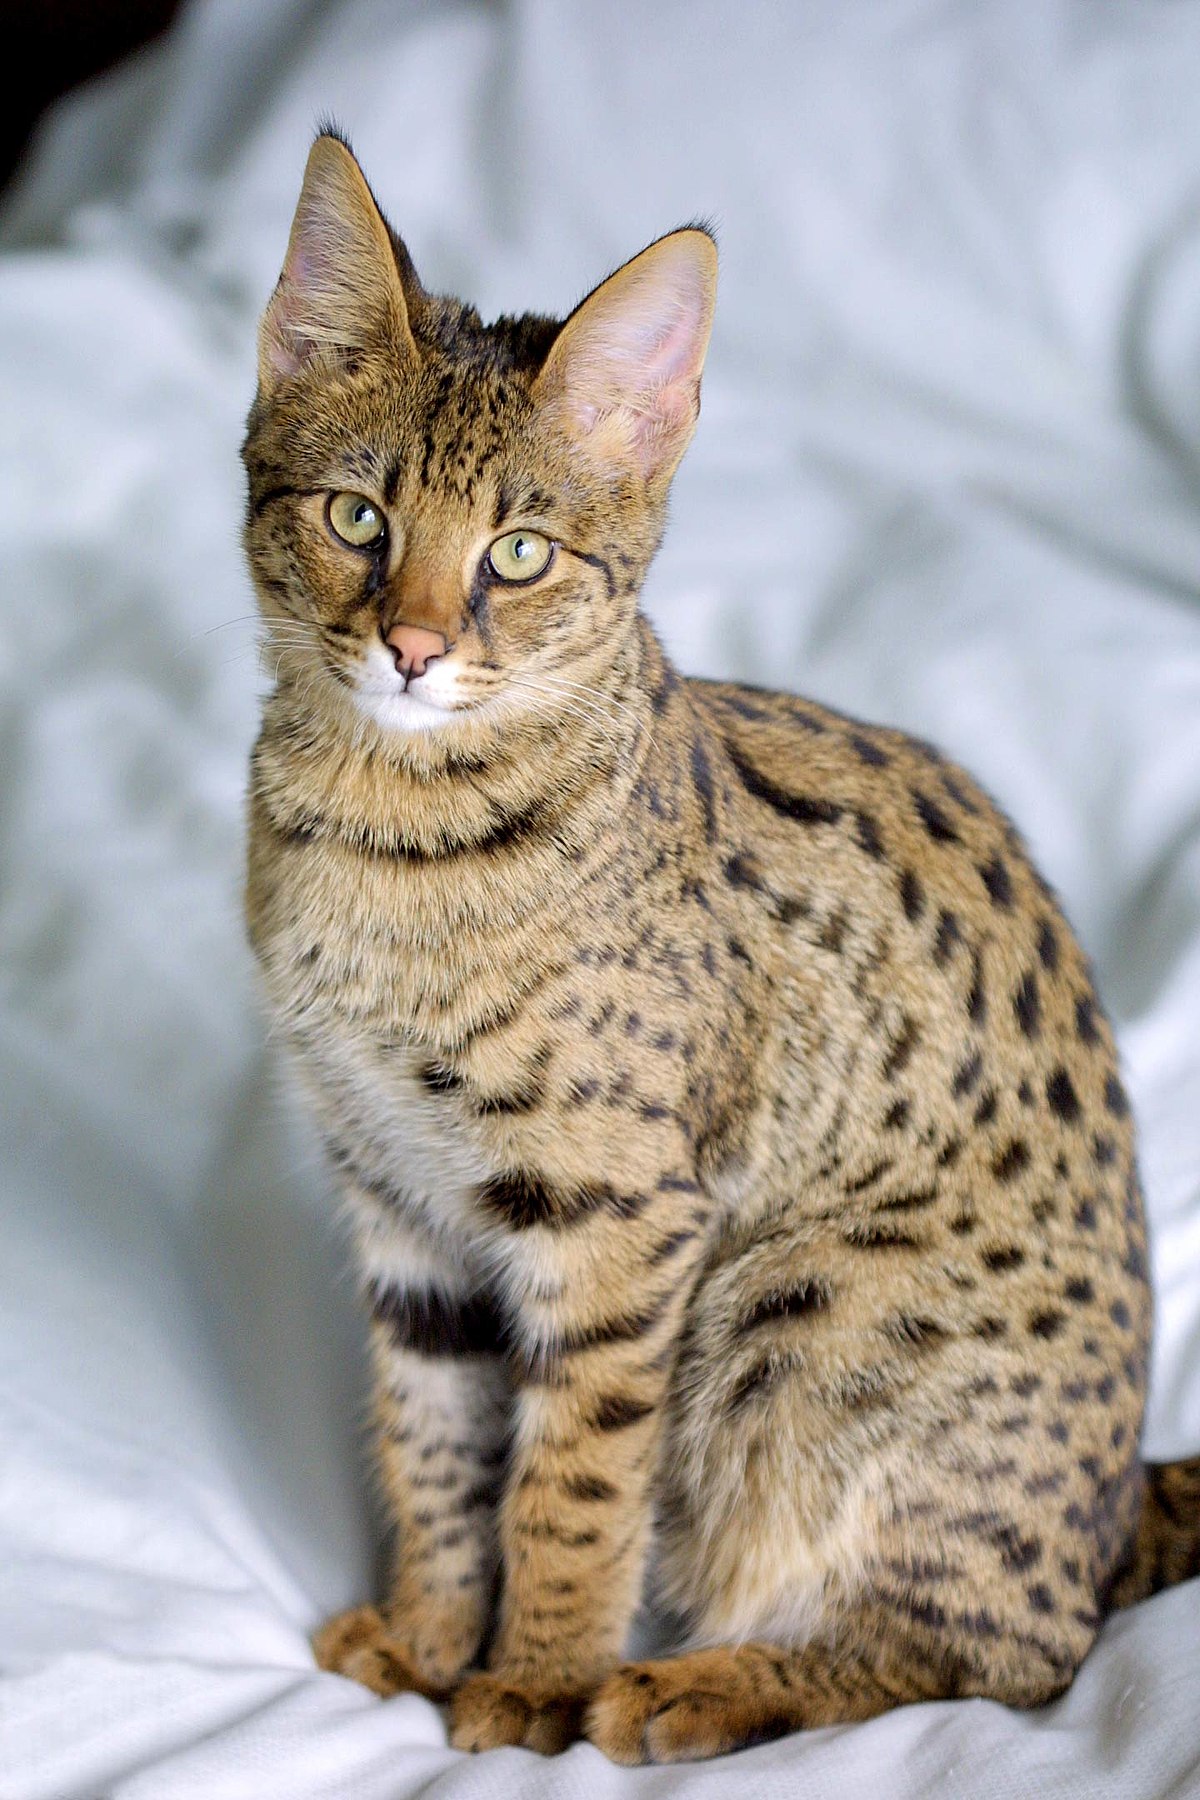 Savannah cat - Wikipedia